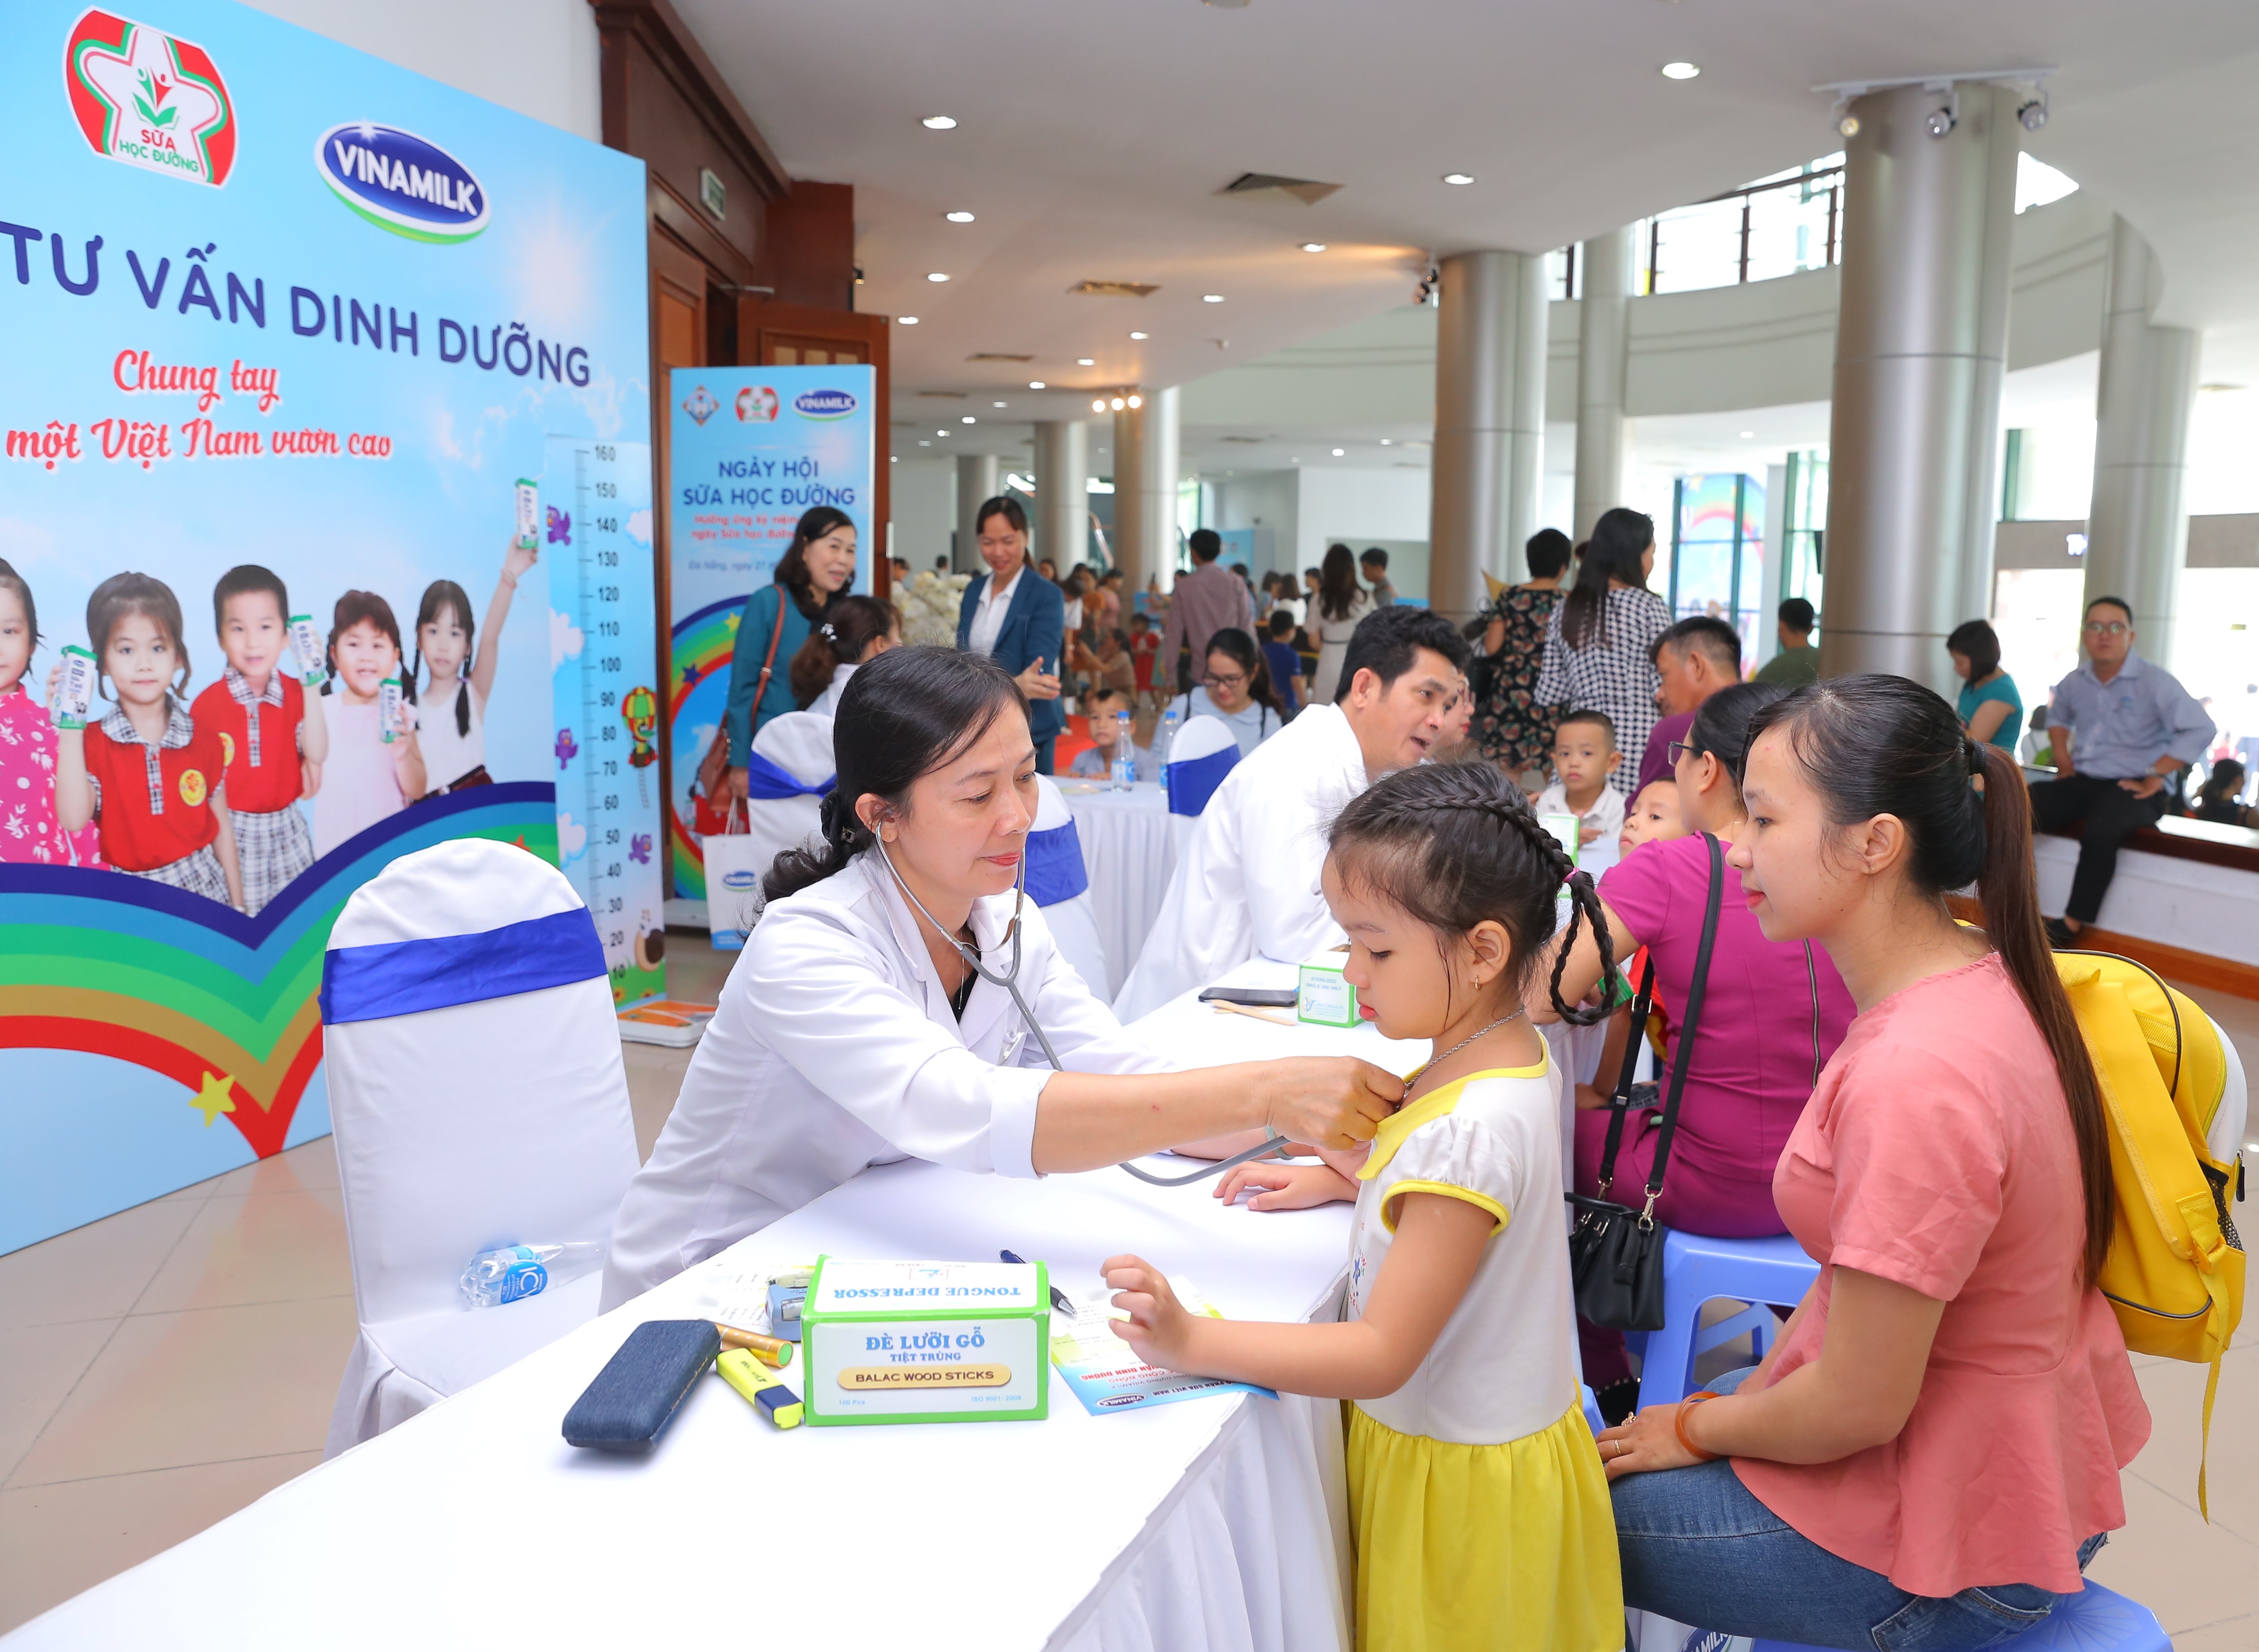 Hưởng ứng kỷ niệm 20 năm Ngày Sữa học đường thế giới: Đà Nẵng tổ chức Ngày hội Sữa học đường cho trẻ em mầm non